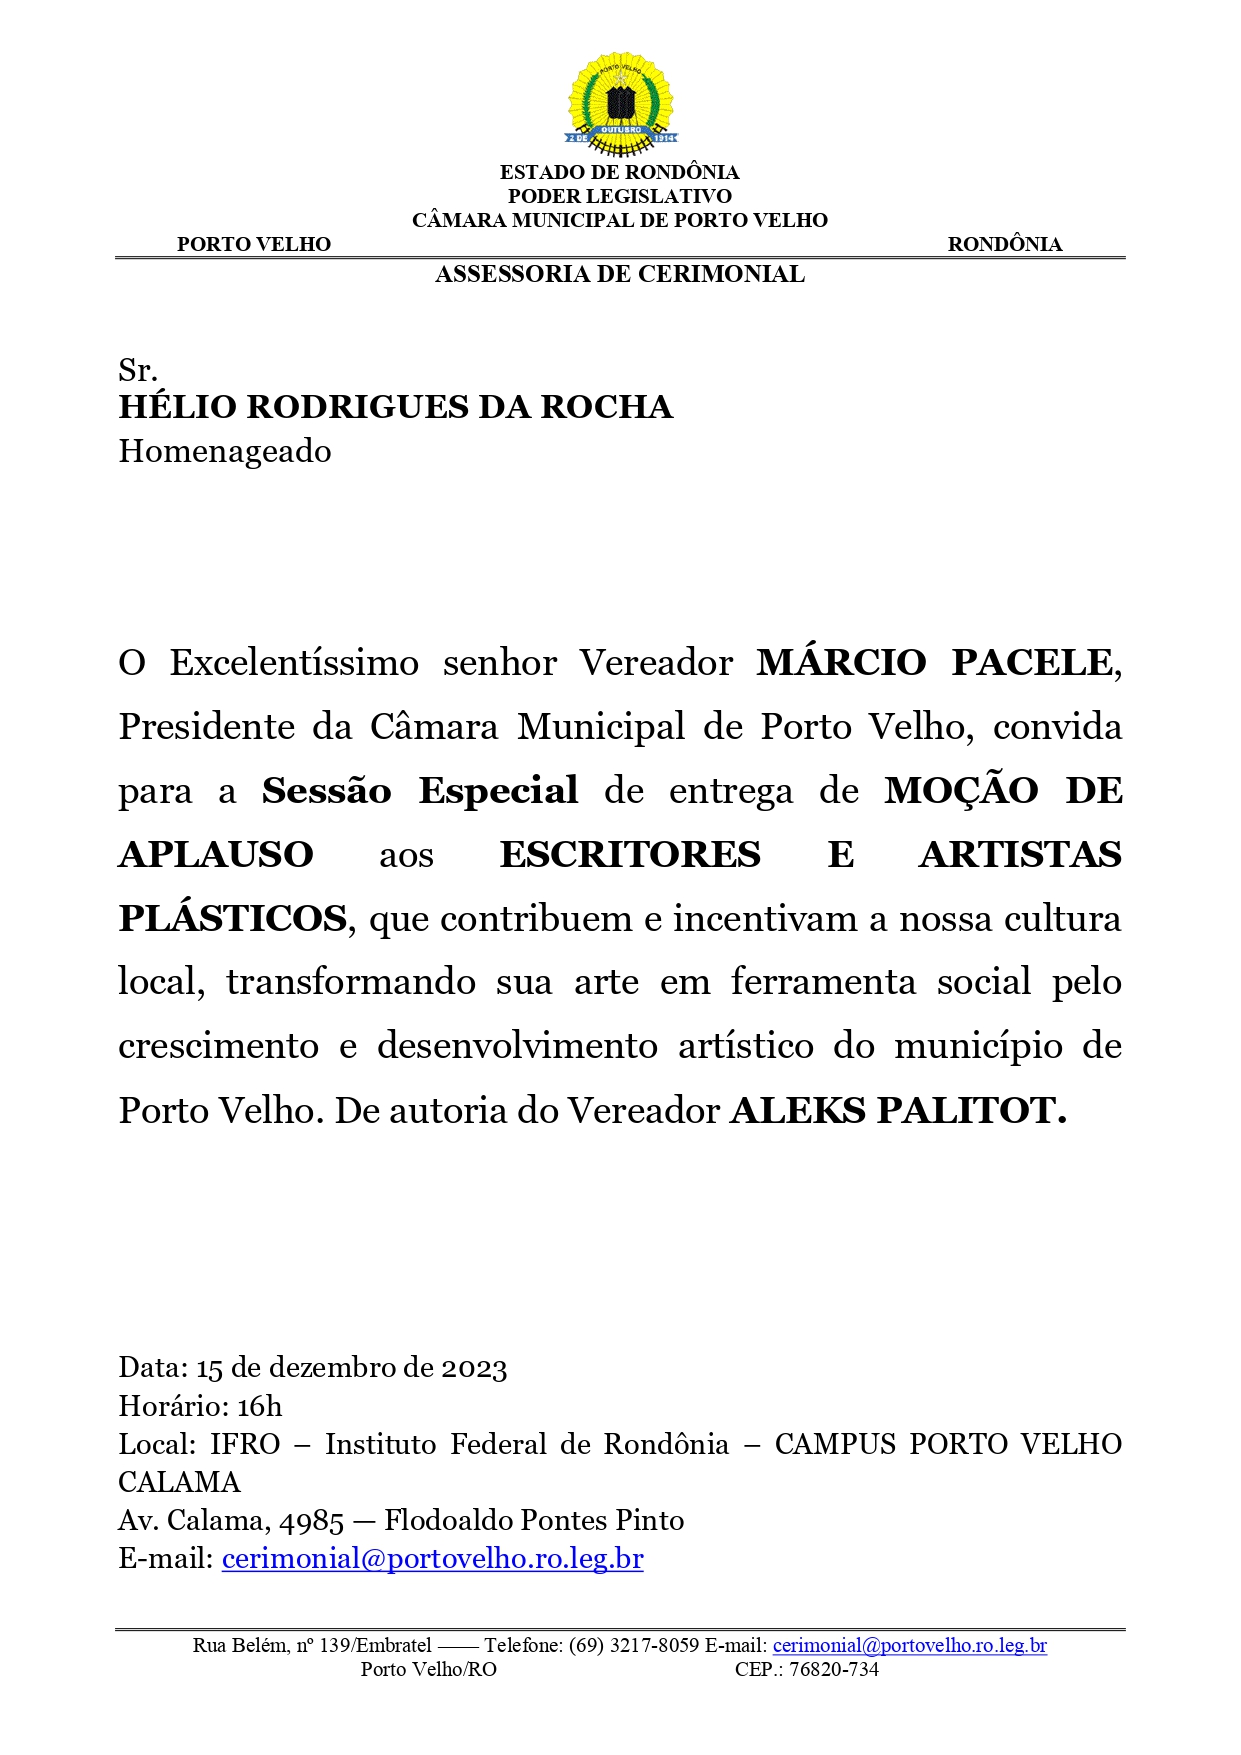 M- A- ESCITORES E ARTISTAS PLÁSTICOS (1)_page-0001